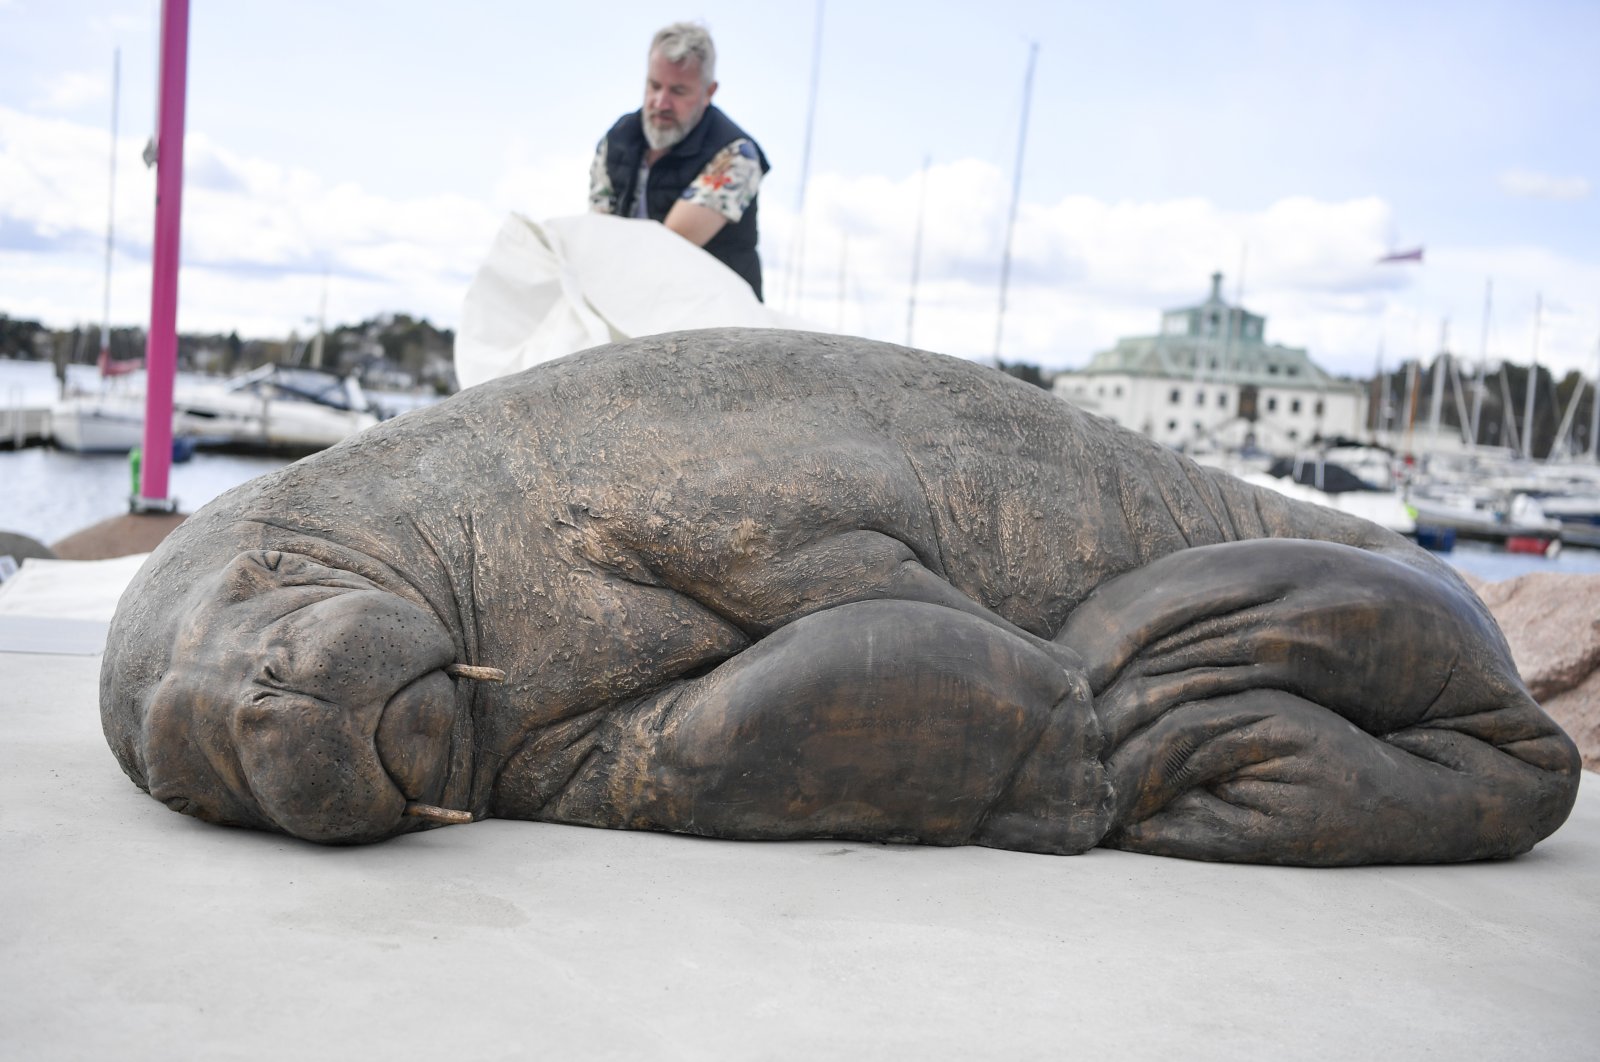 Norwegia mendirikan patung walrus Freya yang terkenal setelah euthanasia yang kontroversial